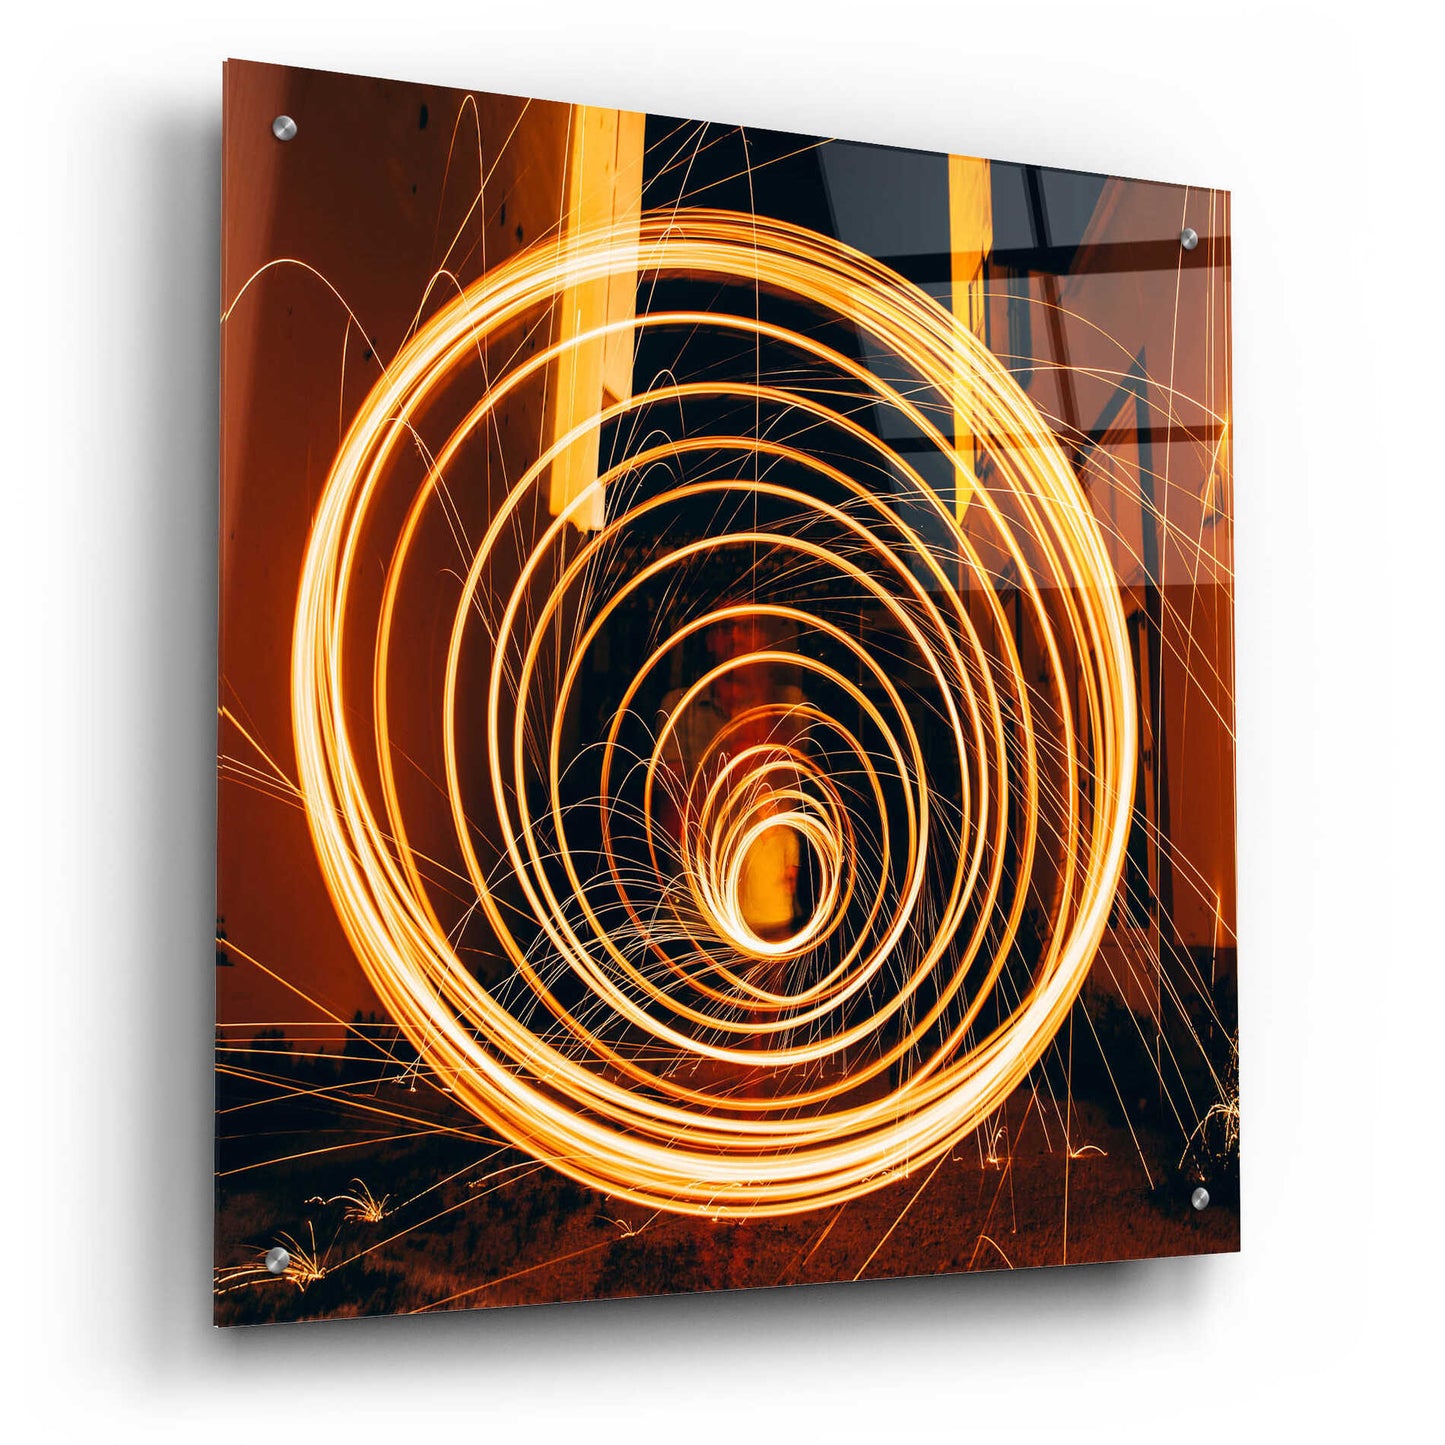 Epic Art 'Fiery Vortex' by Epic Portfolio Acrylic Glass Wall Art,24x24